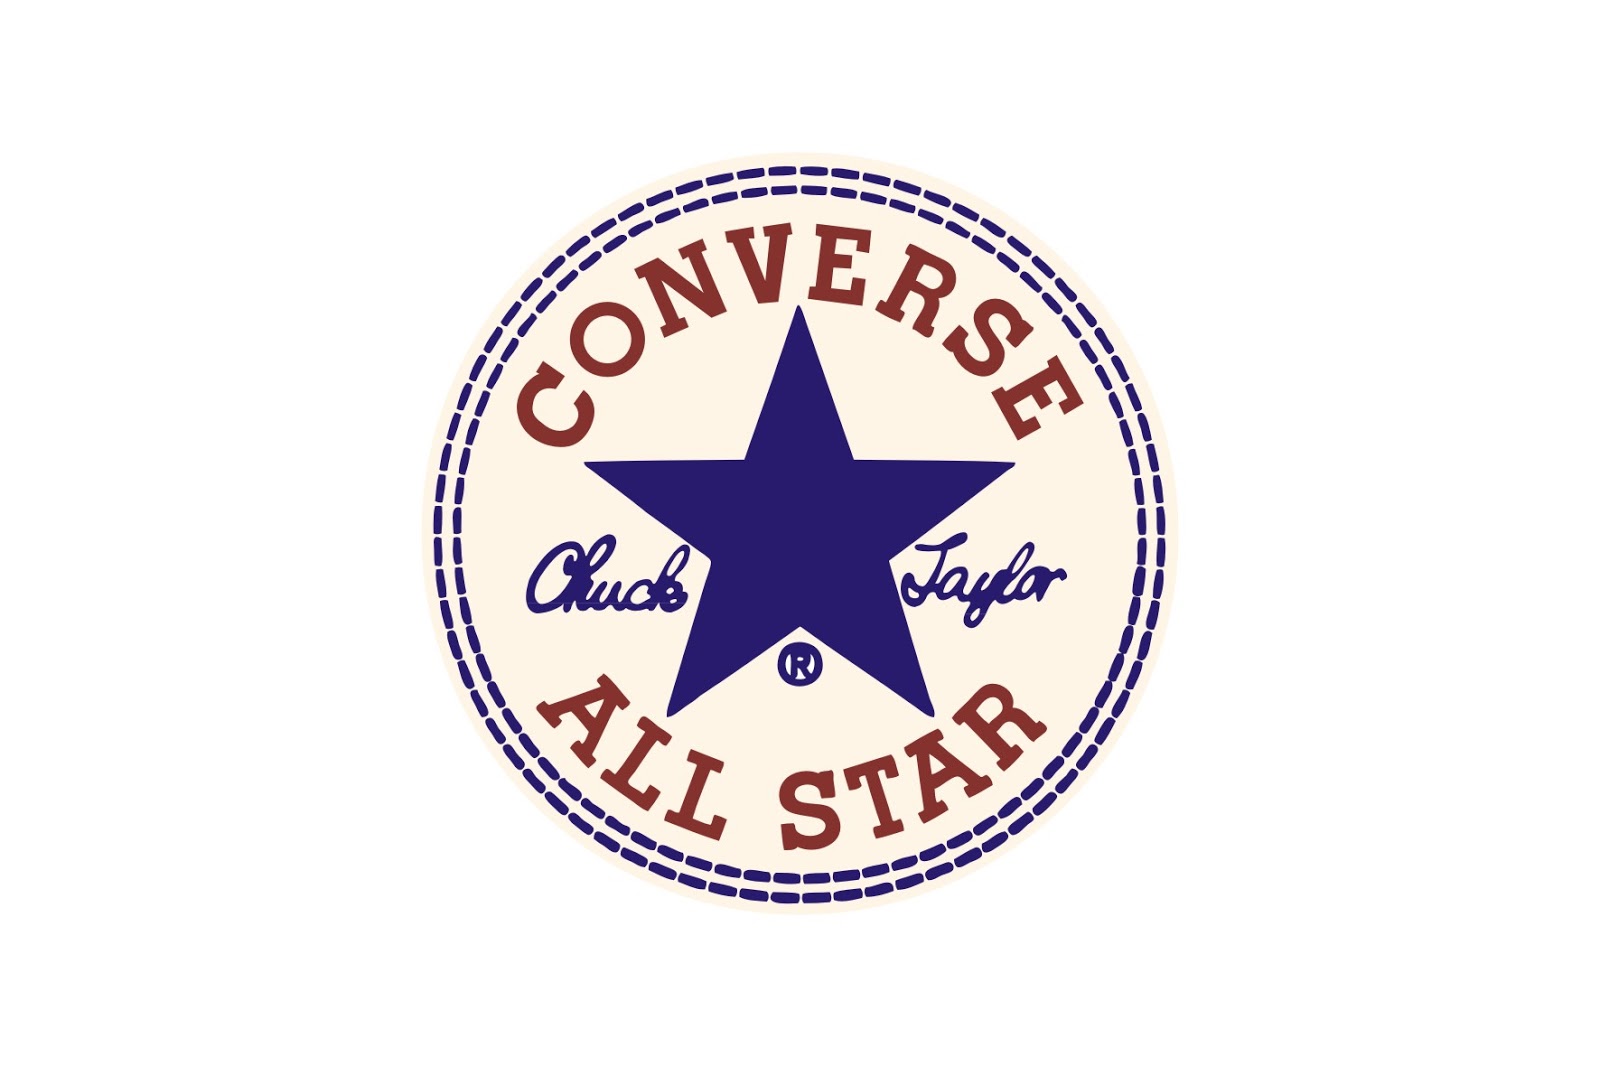 Converse Logos